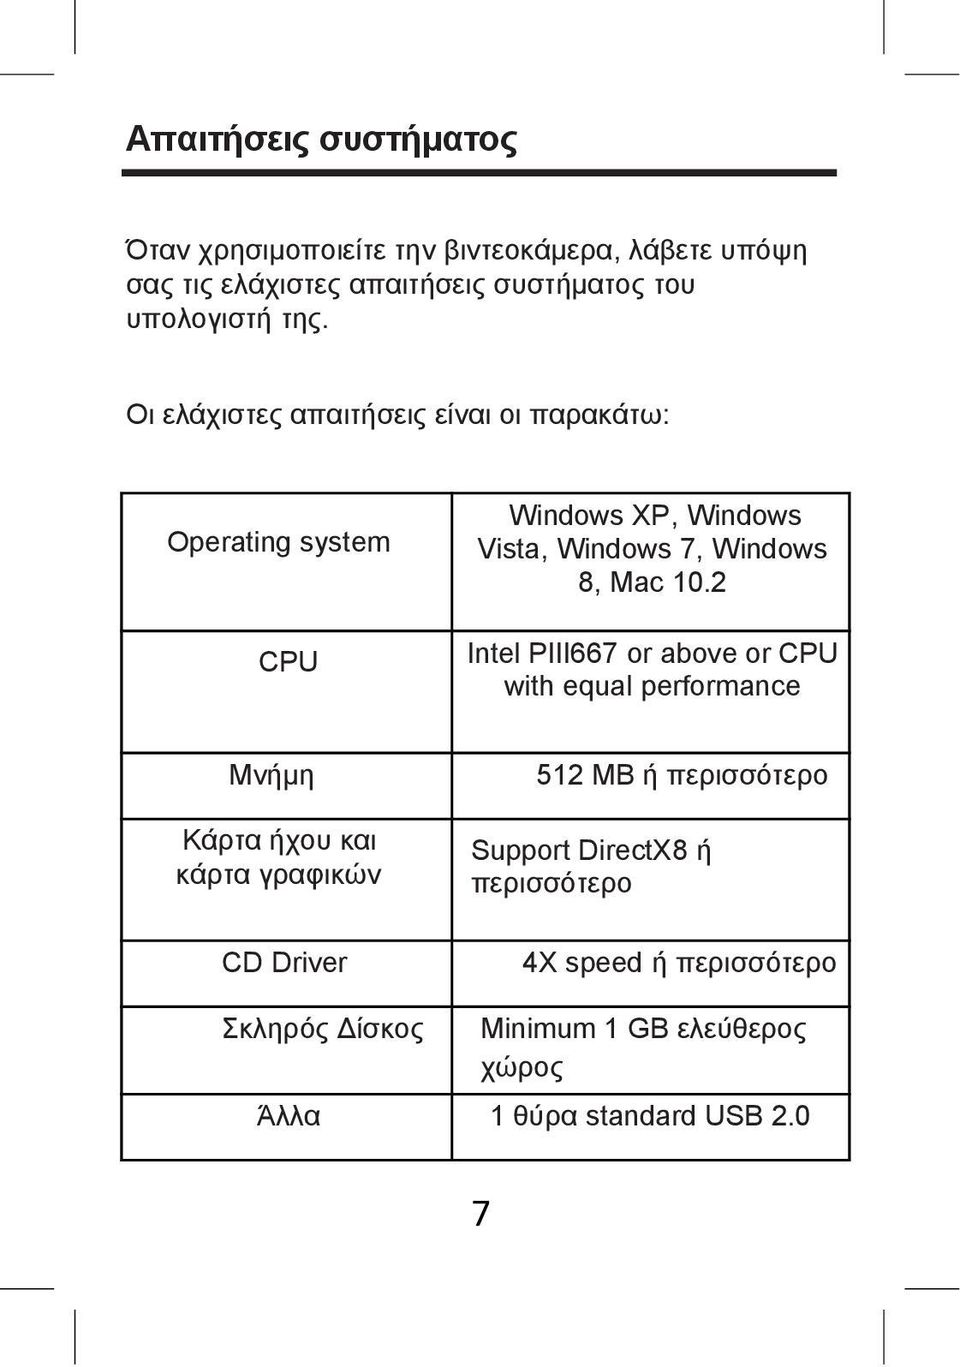 Οι ελάχιστες απαιτήσεις είναι οι παρακάτω: Operating system CPU Windows XP, Windows Vista, Windows 7, Windows 8, Mac 10.